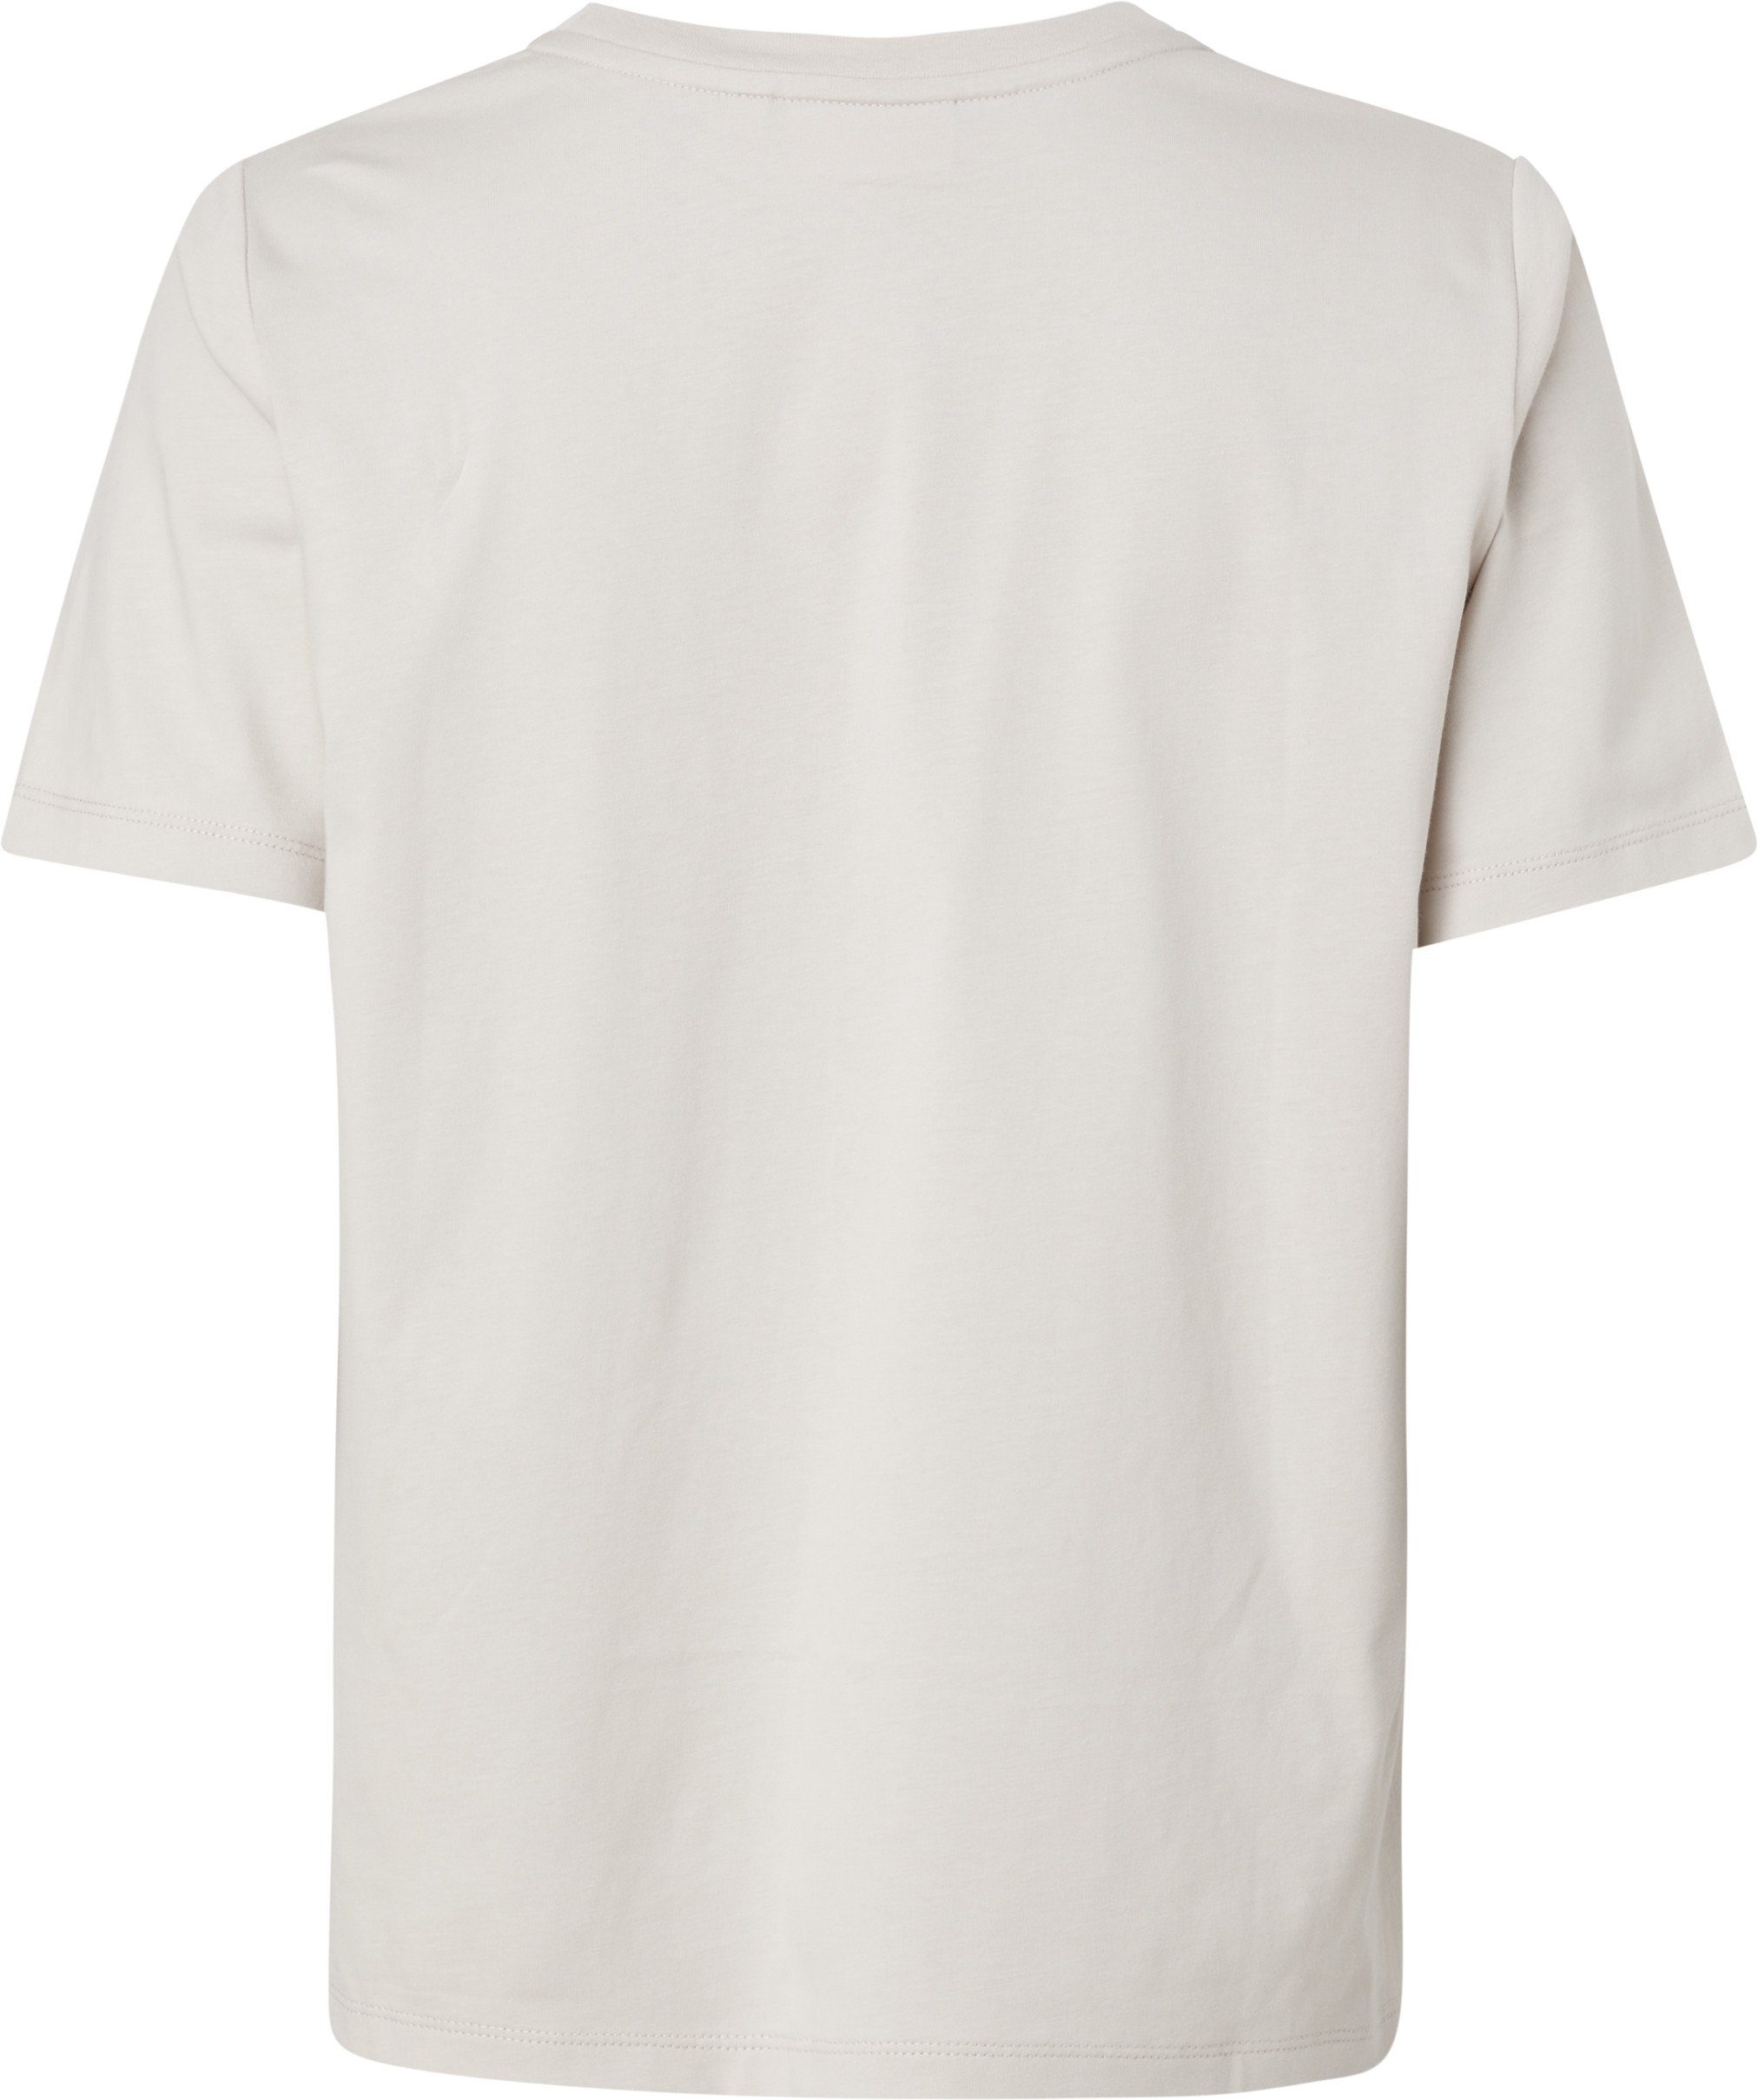 MICRO Baumwolle LOGO aus T-SHIRT Gray reiner Silver Calvin Klein T-Shirt